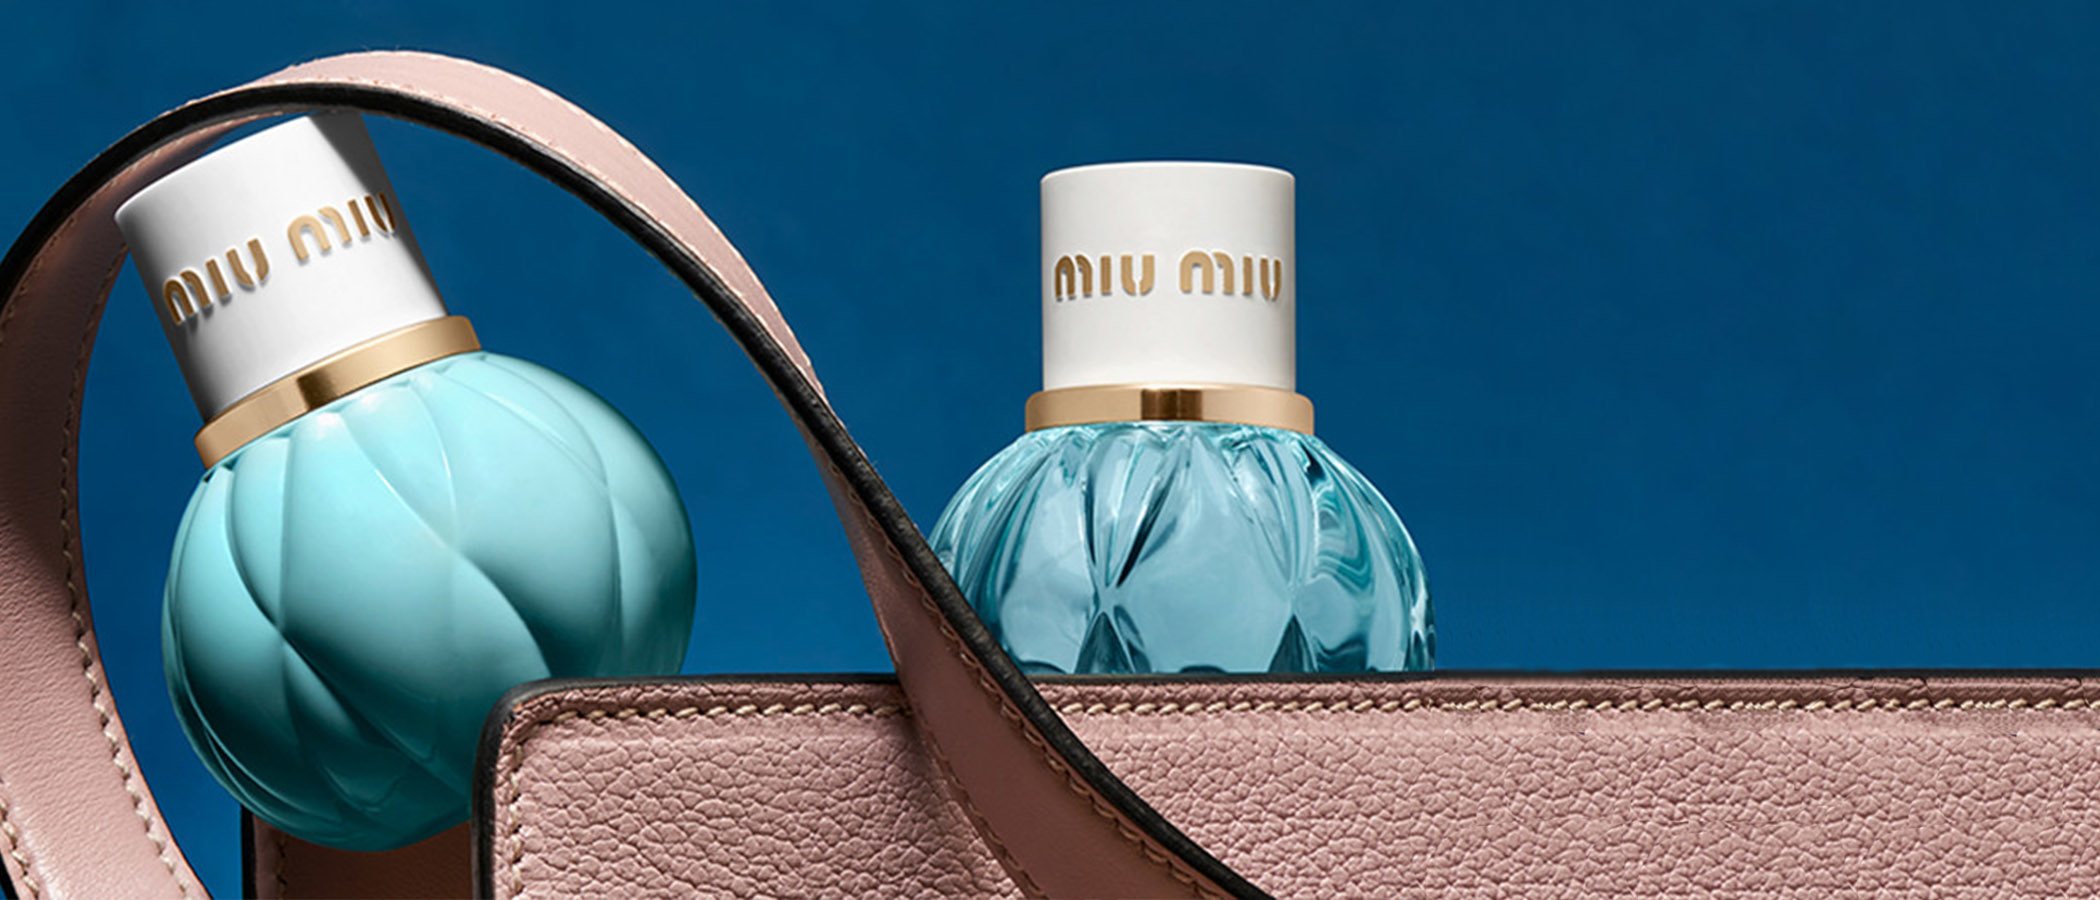 Miu Miu reediciona en 'Mini Miu' dos de sus fragancias con un encantador y precioso formato de viaje